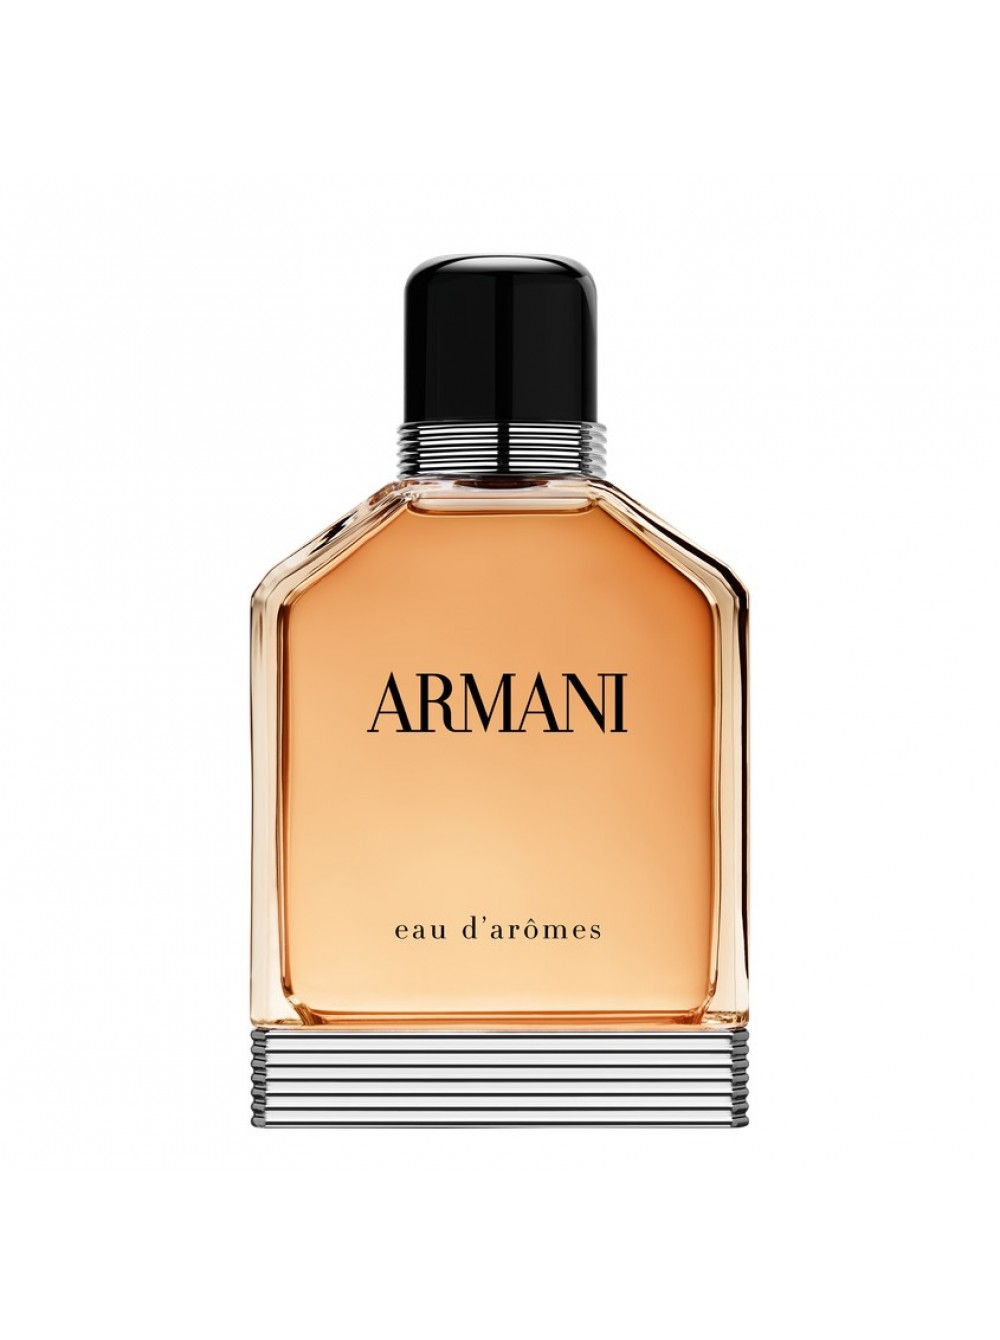 Giorgio Armani Eau d`aromes. Giorgio Armani Eau pour homme 100ml.. Armani духи мужские цена. Giorgio armani pour homme